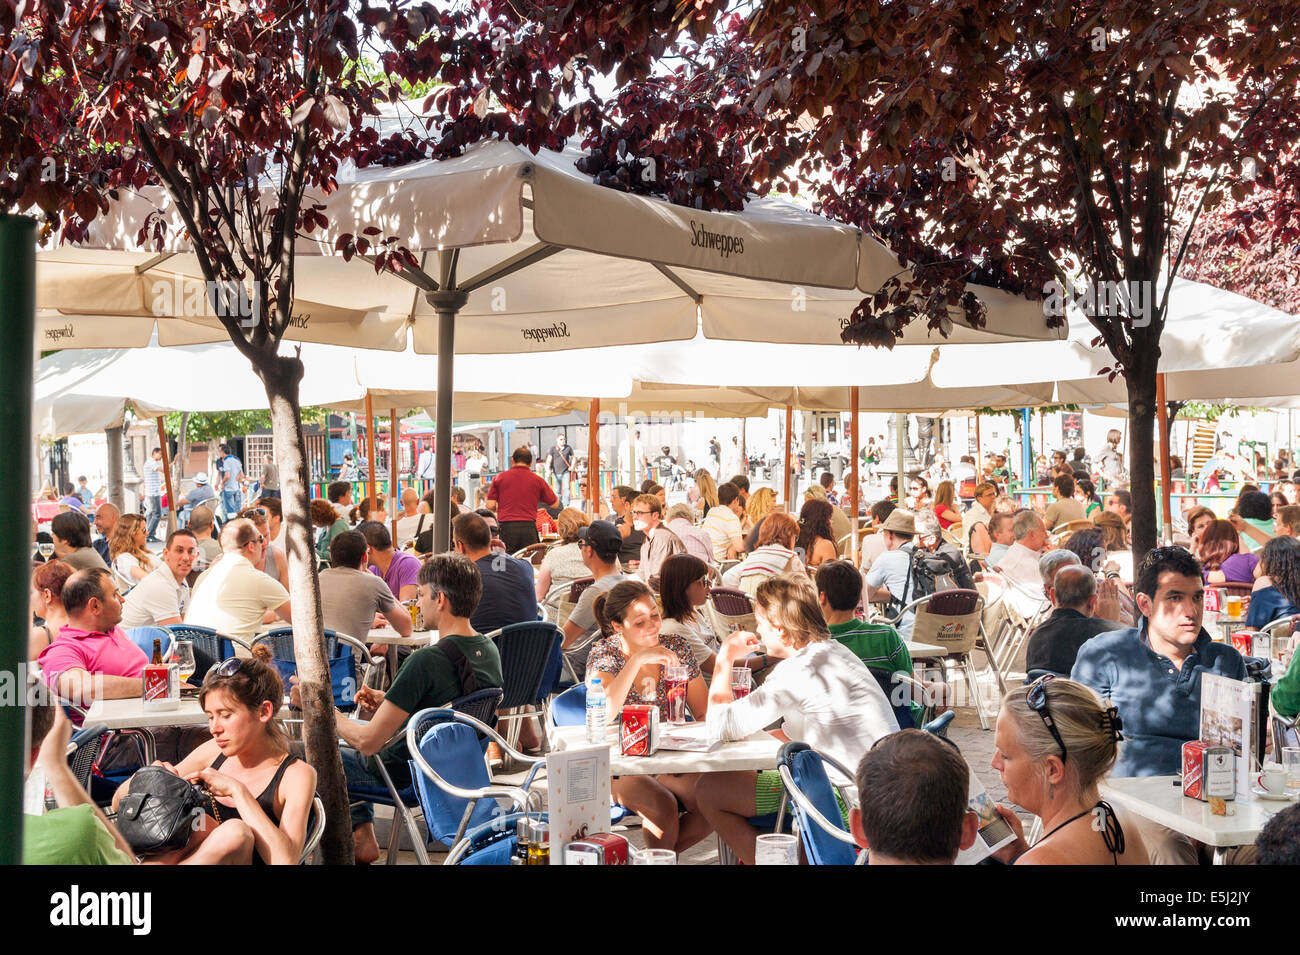 Les gens au bar bondé les tables sur la Plaza de Santa Ana, Barrio de las Letras, Madrid, Espagne Banque D'Images